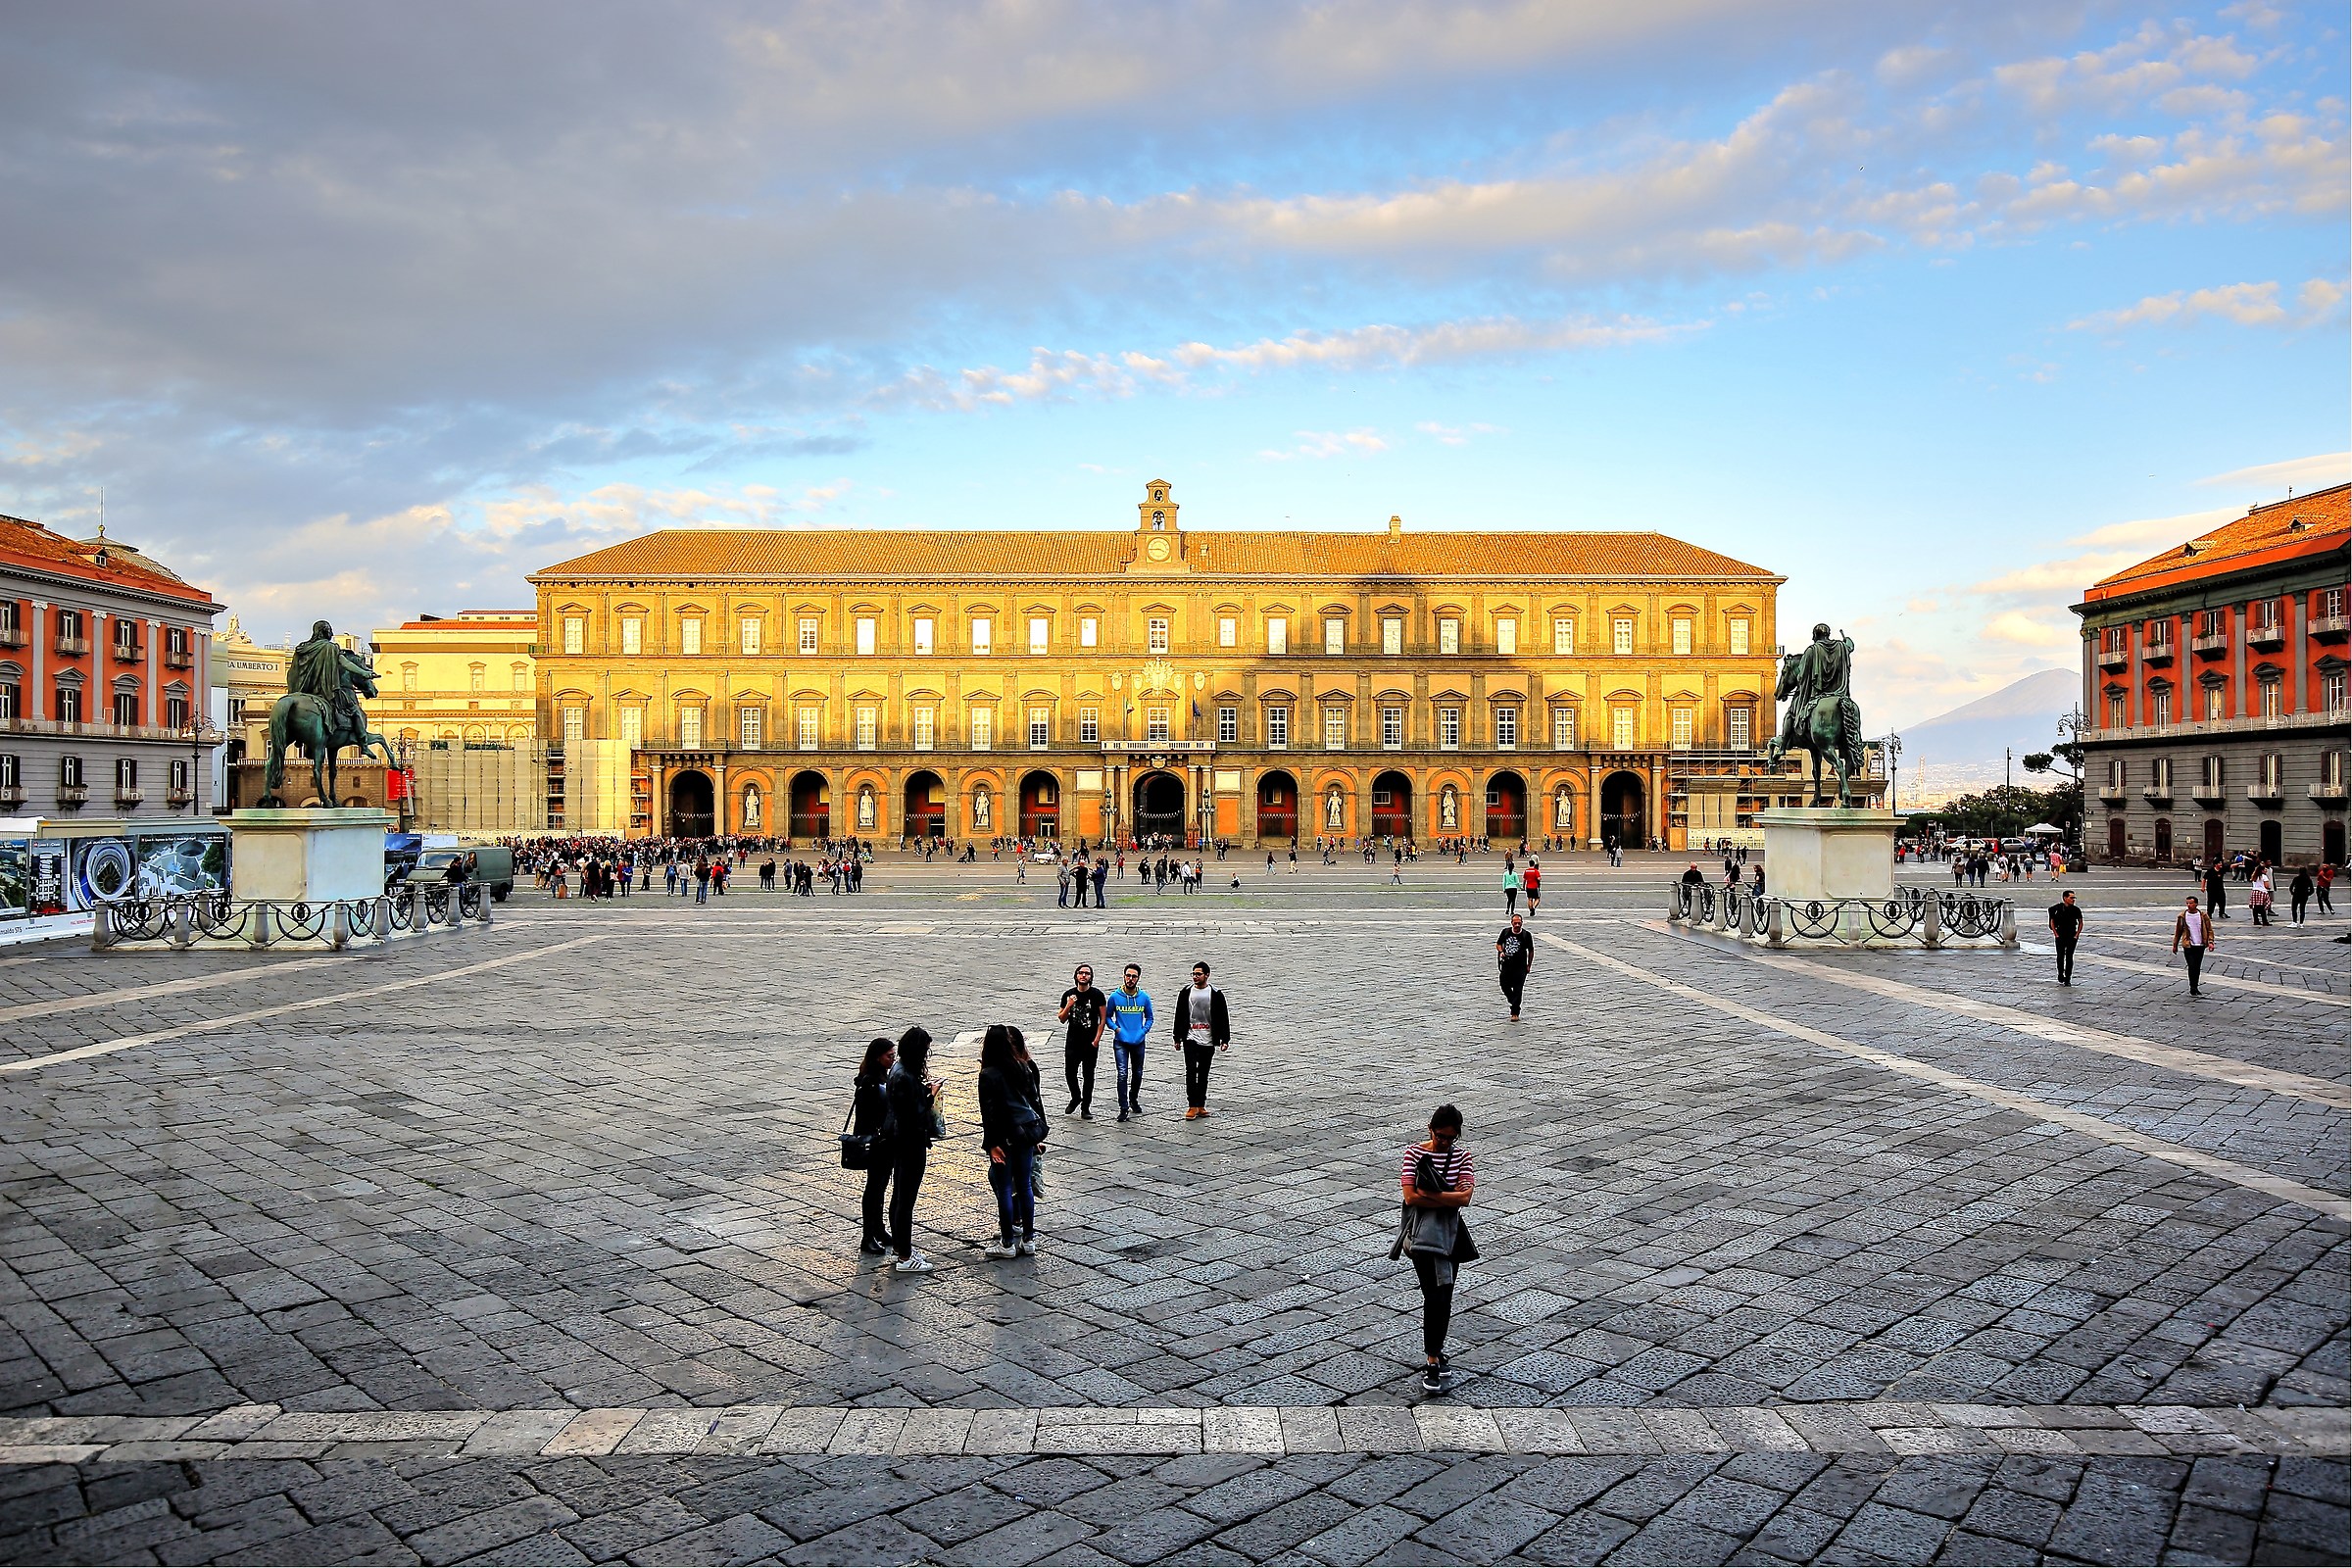 Naples-Royal palace...